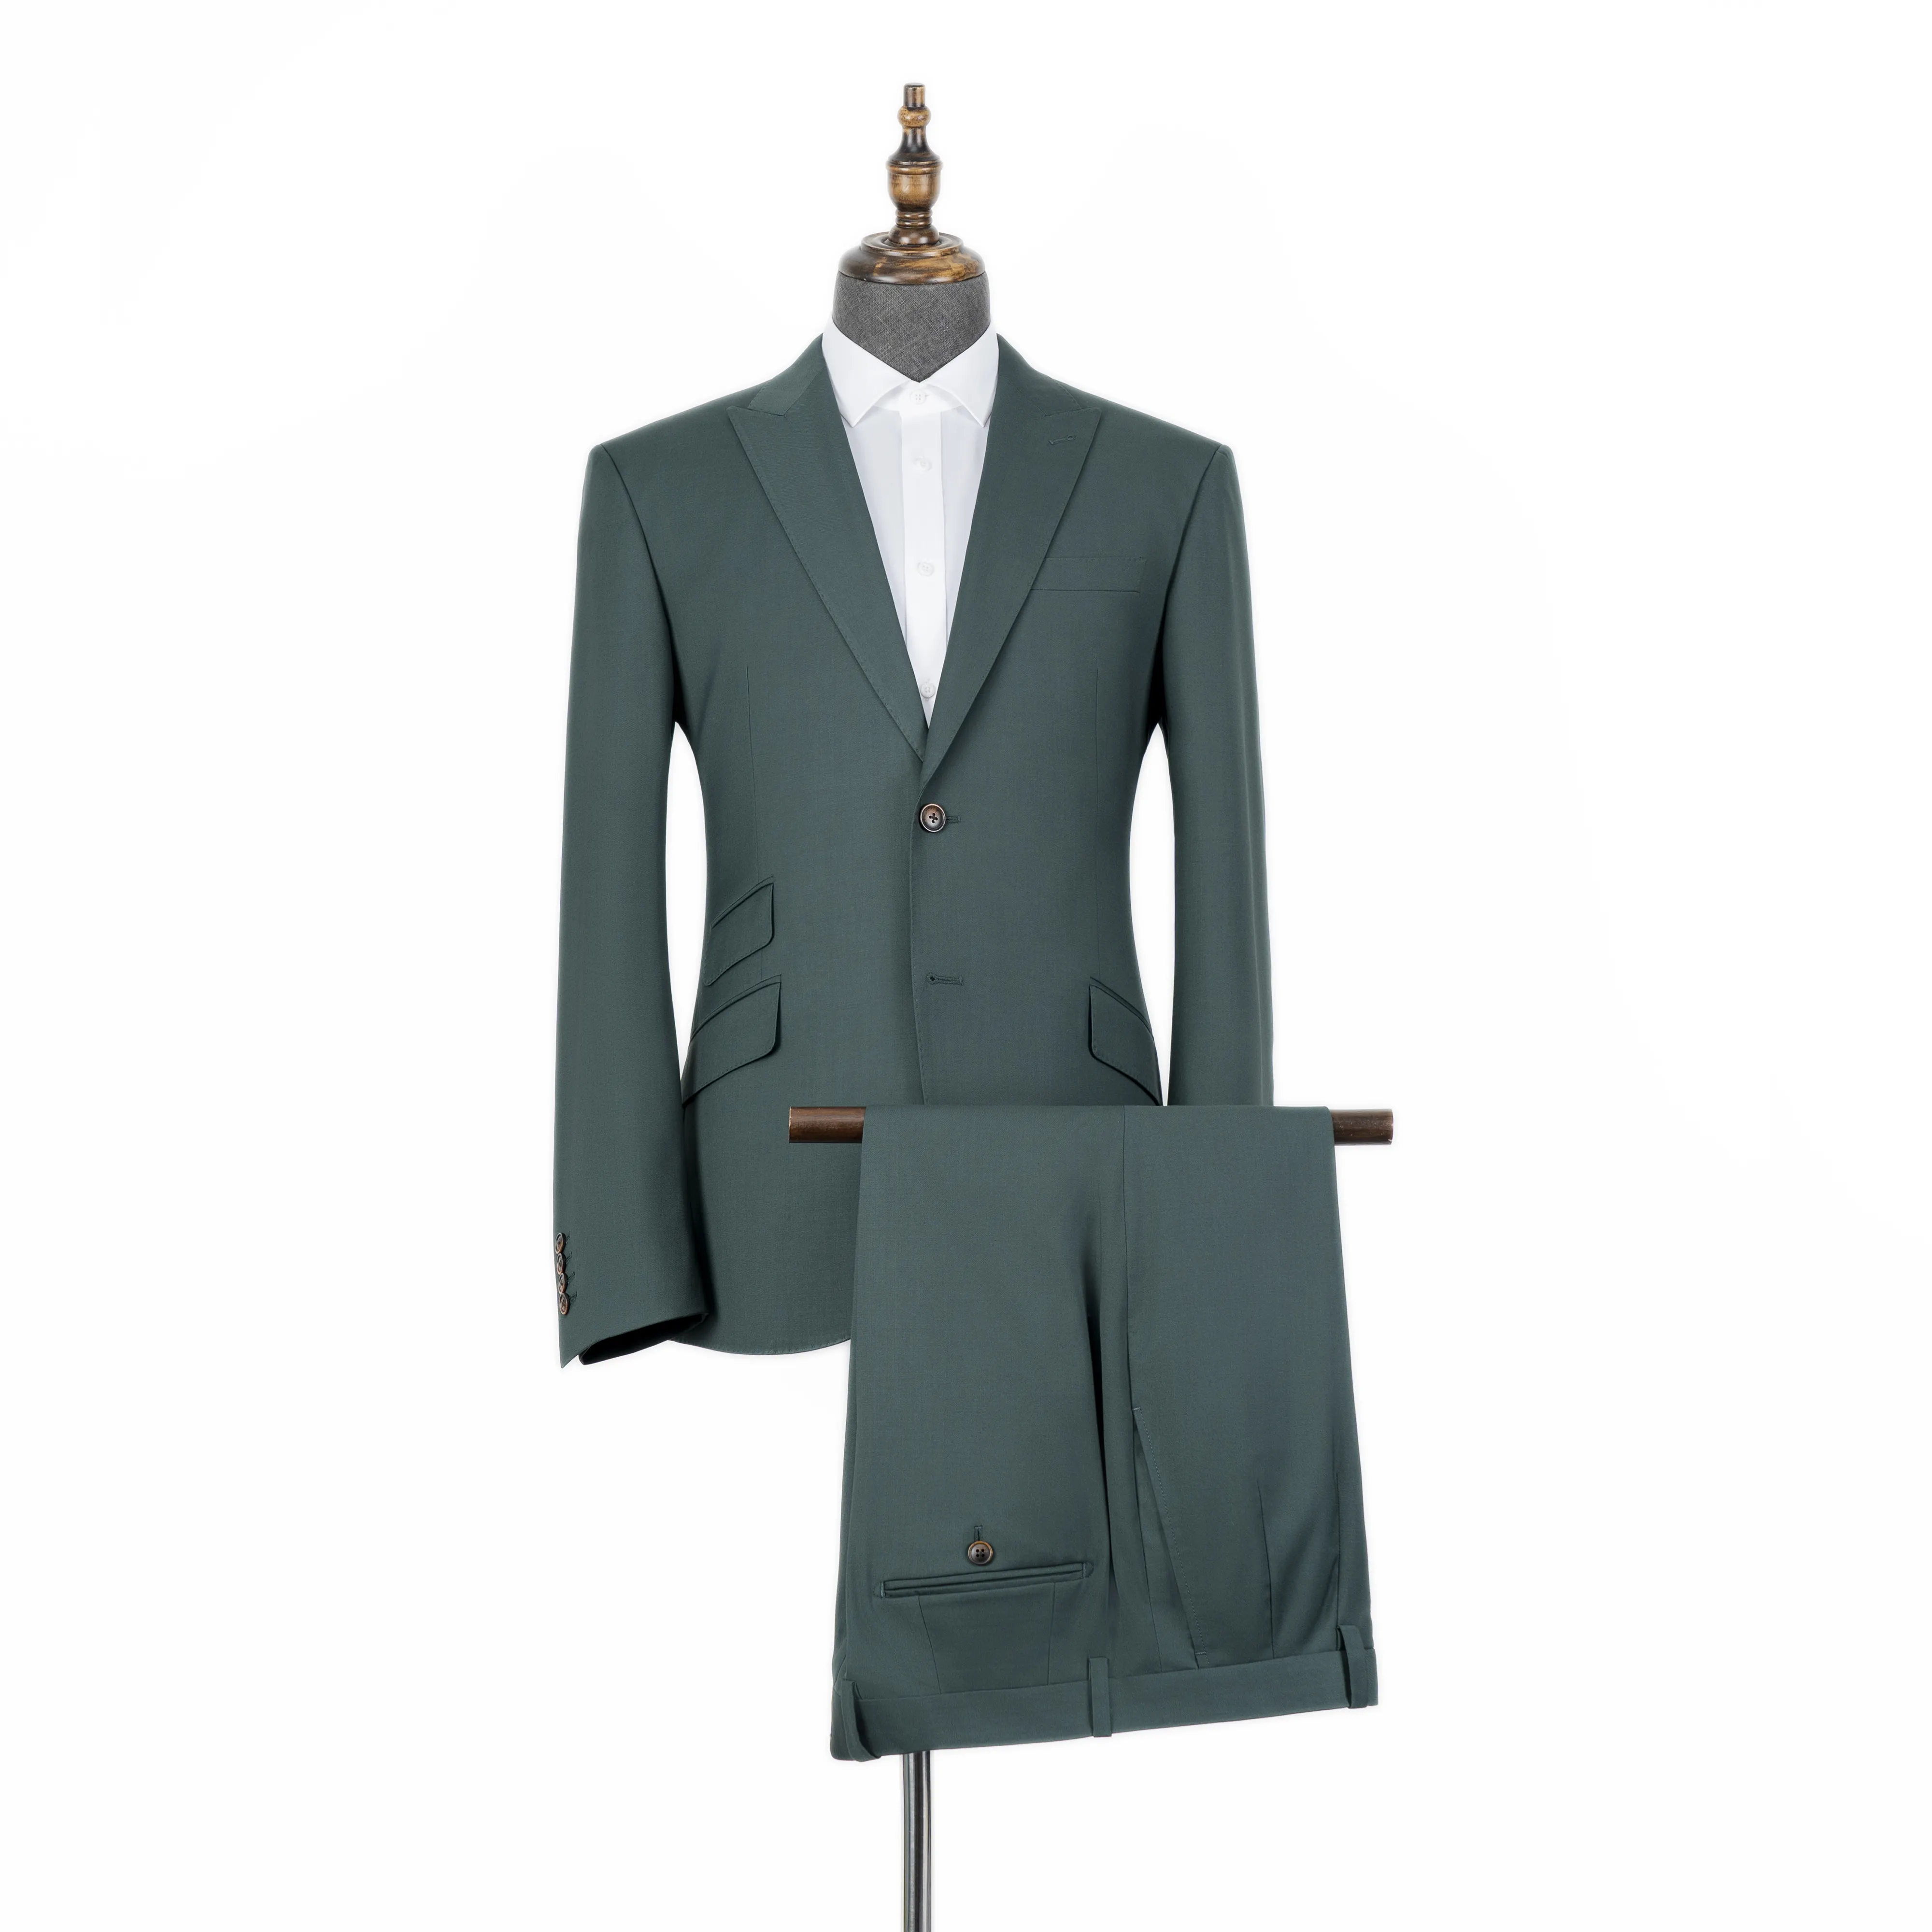 Personalizado fabricantes de roupas, duas peças jaqueta e calça verde slim fit personalizado homens negócios casual traje alfaiate para homens